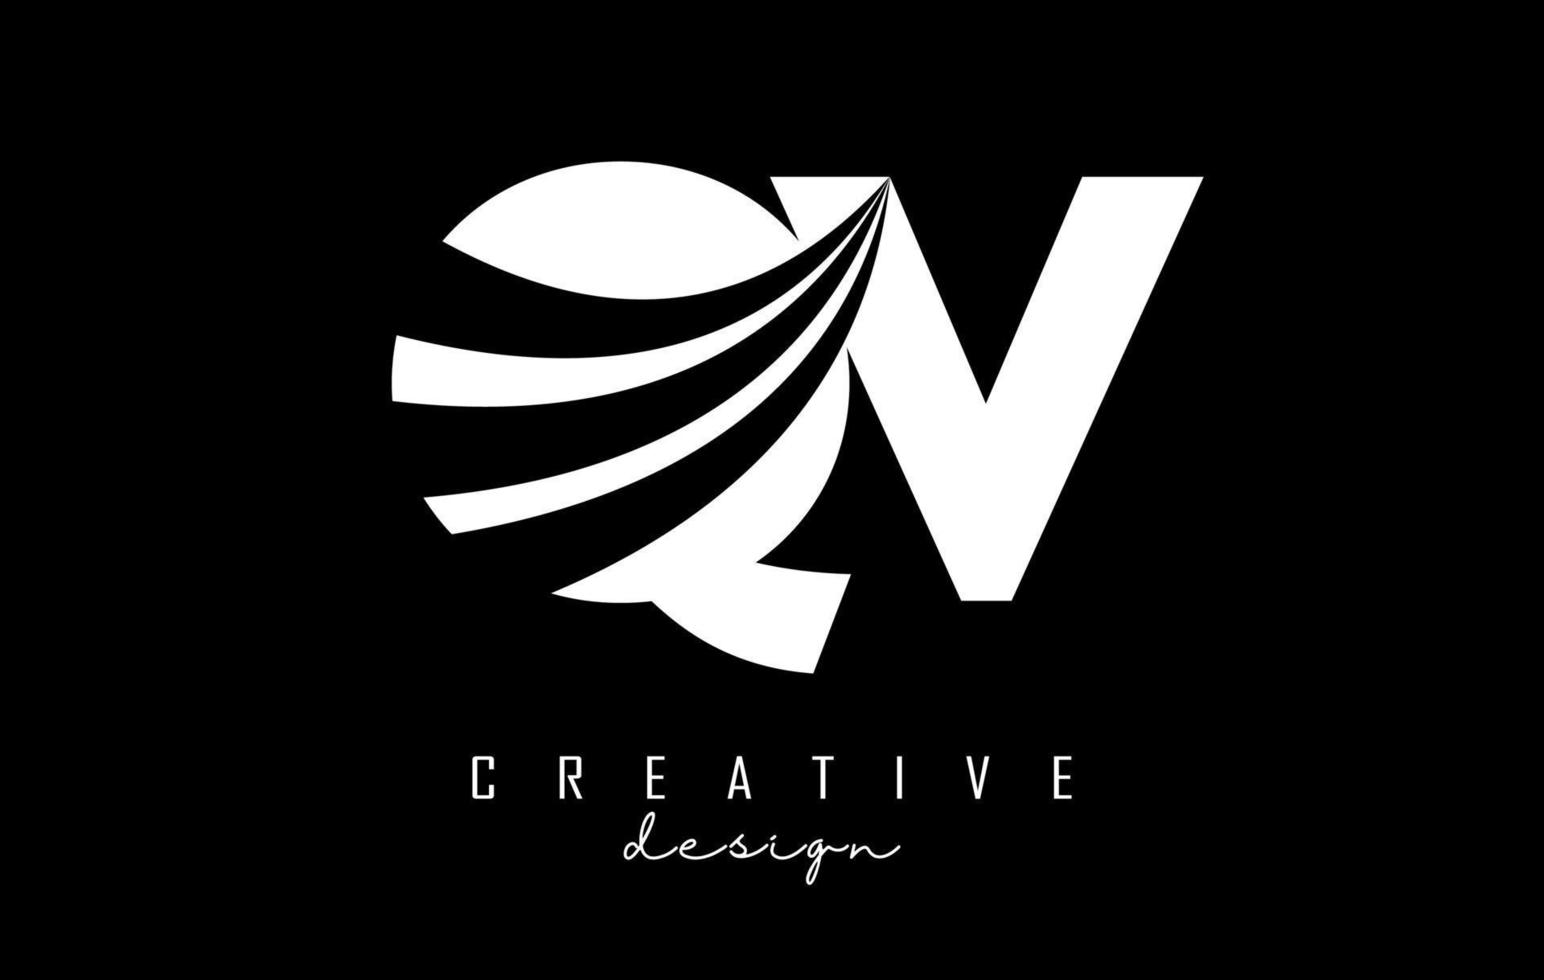 letras blancas creativas qv qv logo con líneas principales y diseño de concepto de carretera. letras con diseño geométrico. vector